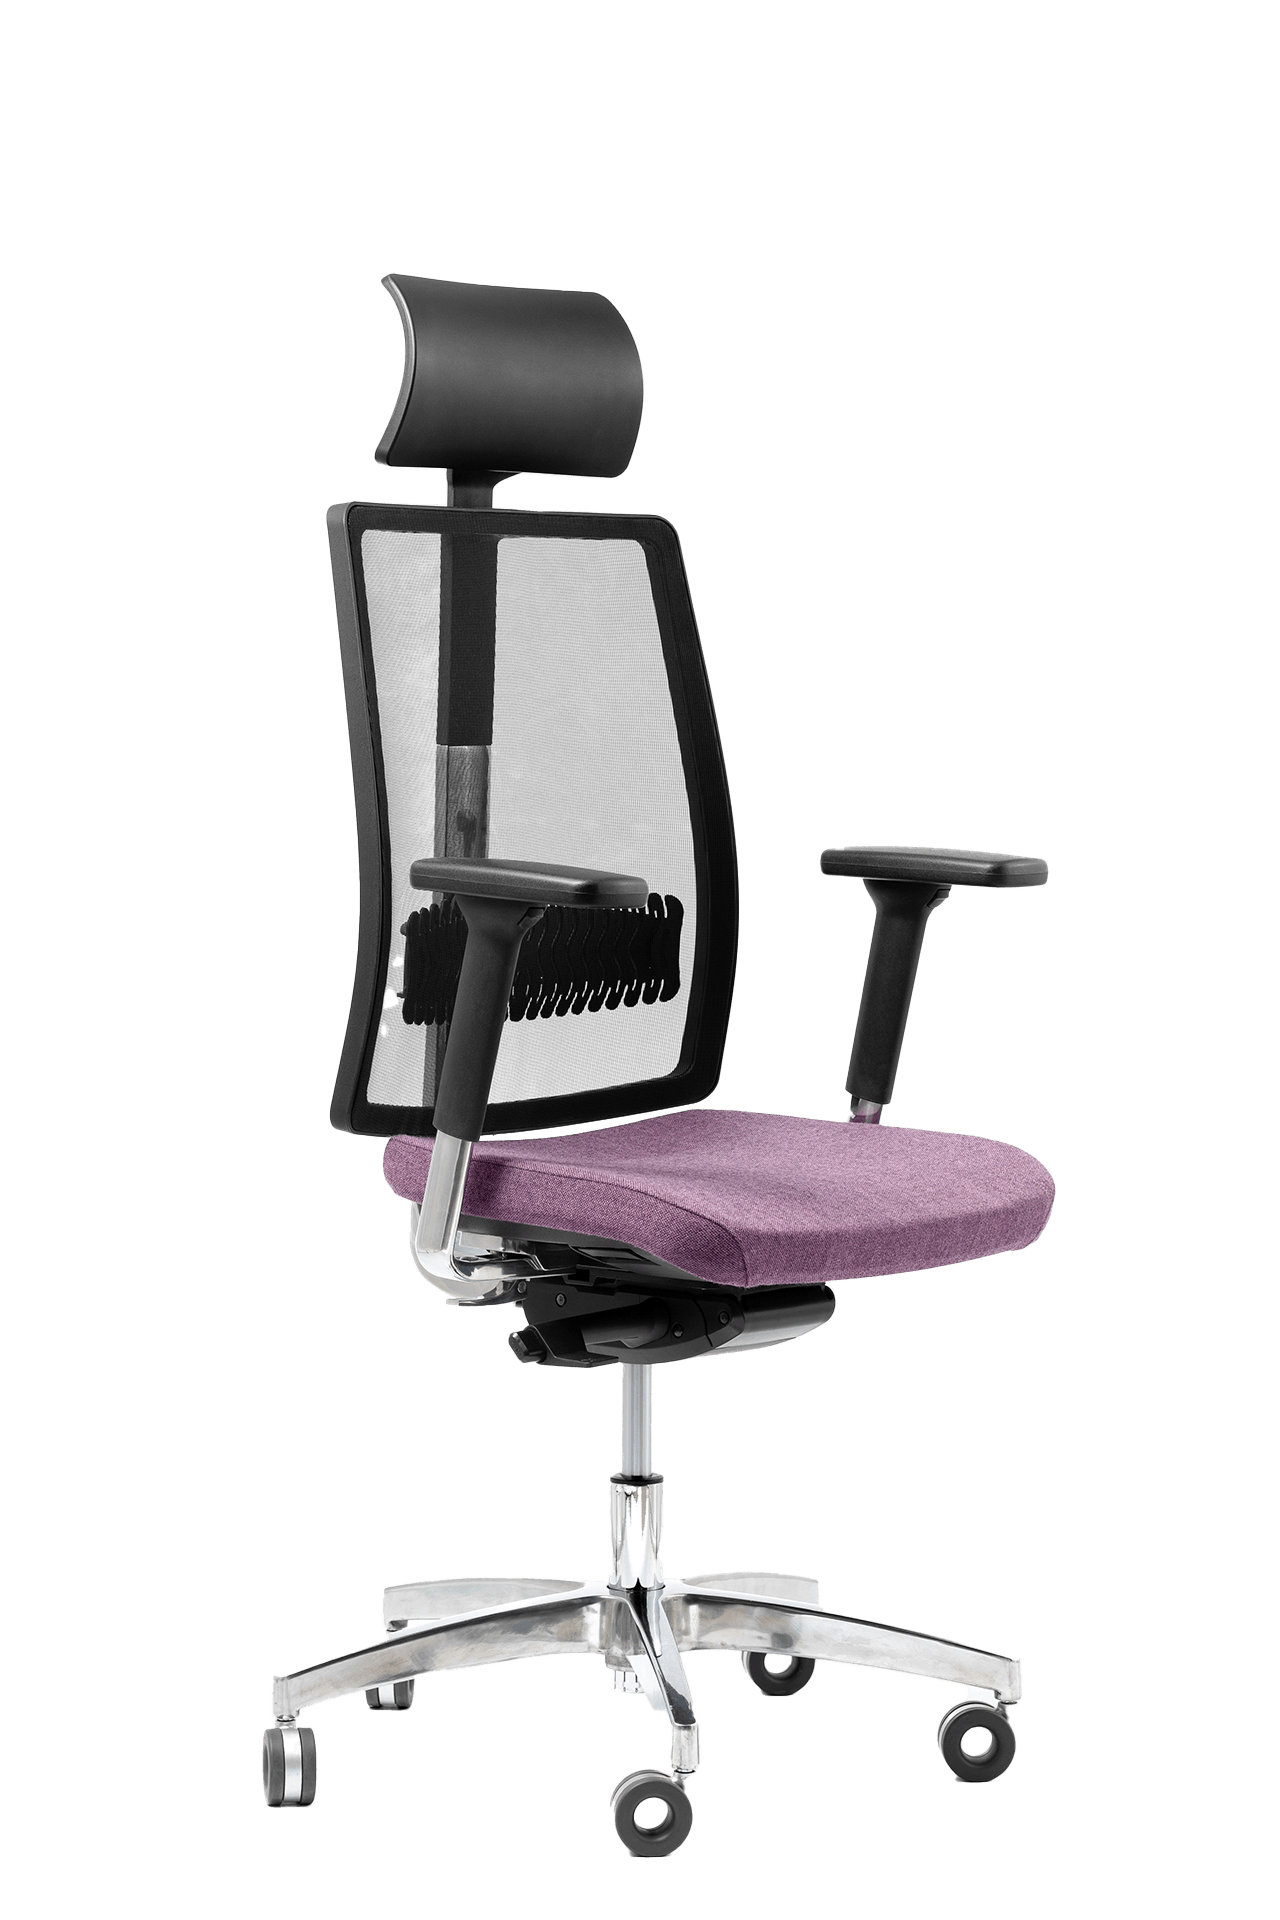 Czarny fotel biurowy z fioletowym siedzeniem z zagłówkiem - widoczny po skosie od przodu